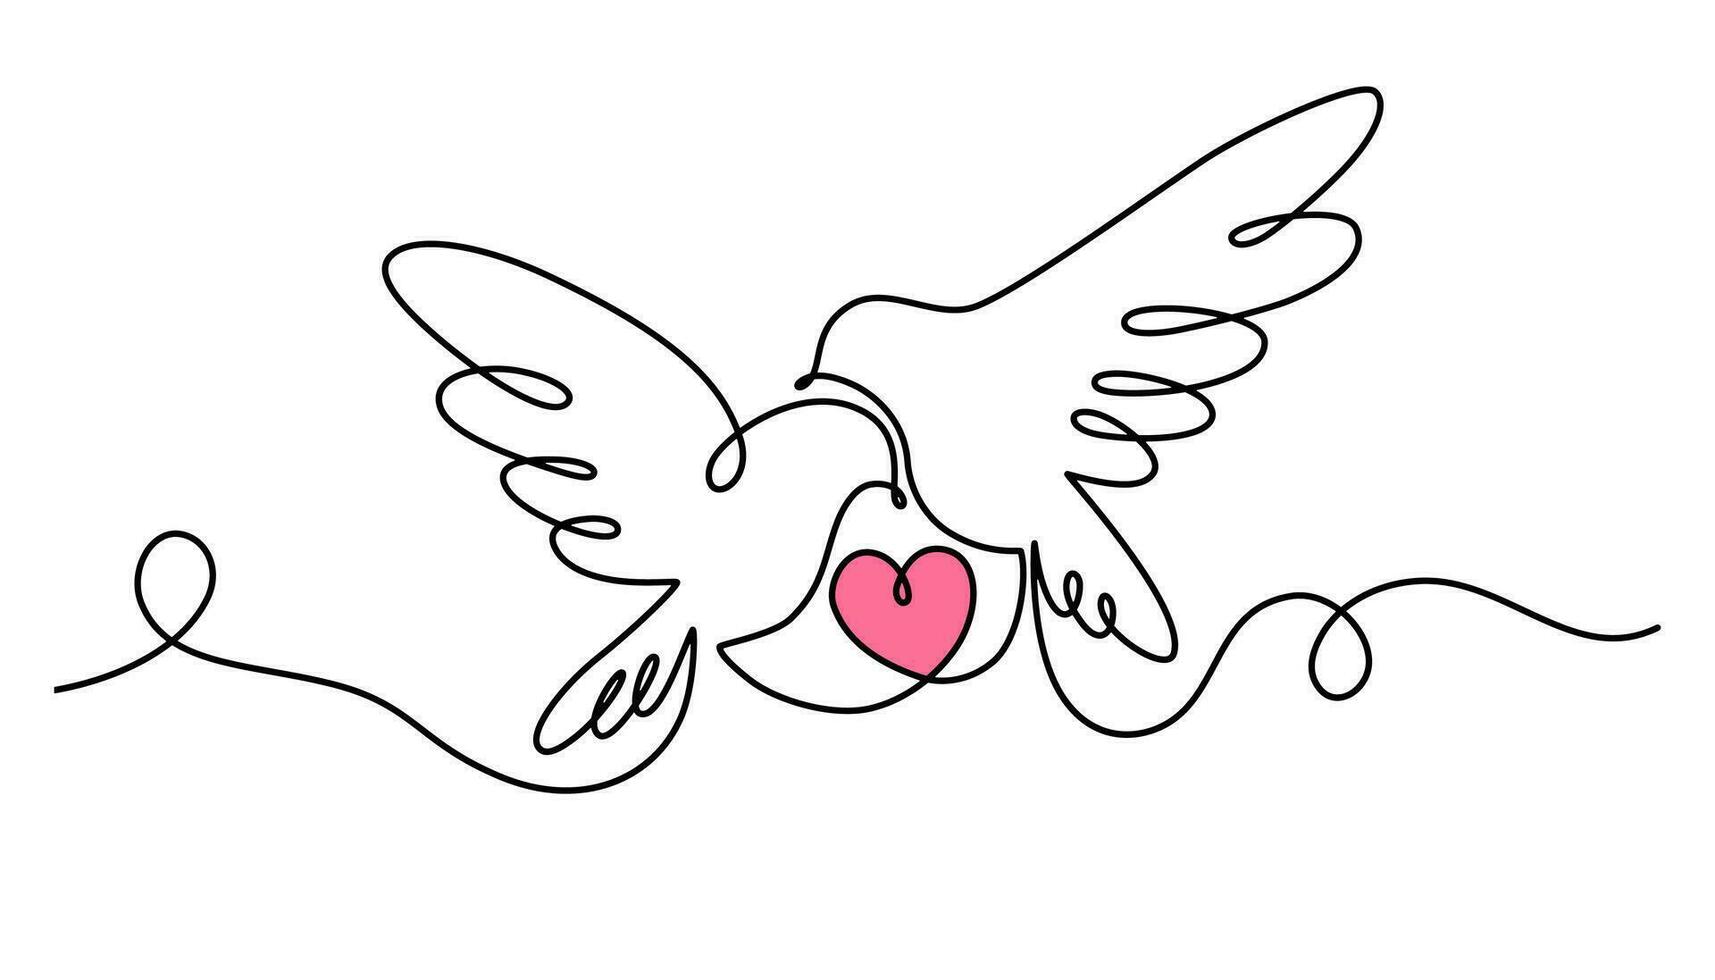 duvor med en hjärta ett kontinuerlig linje teckning. fågel symbol av fred, kärlek och frihet i enkel linjär stil. valentine dag. vektor översikt illustration för baner, broschyr, affisch, presentation